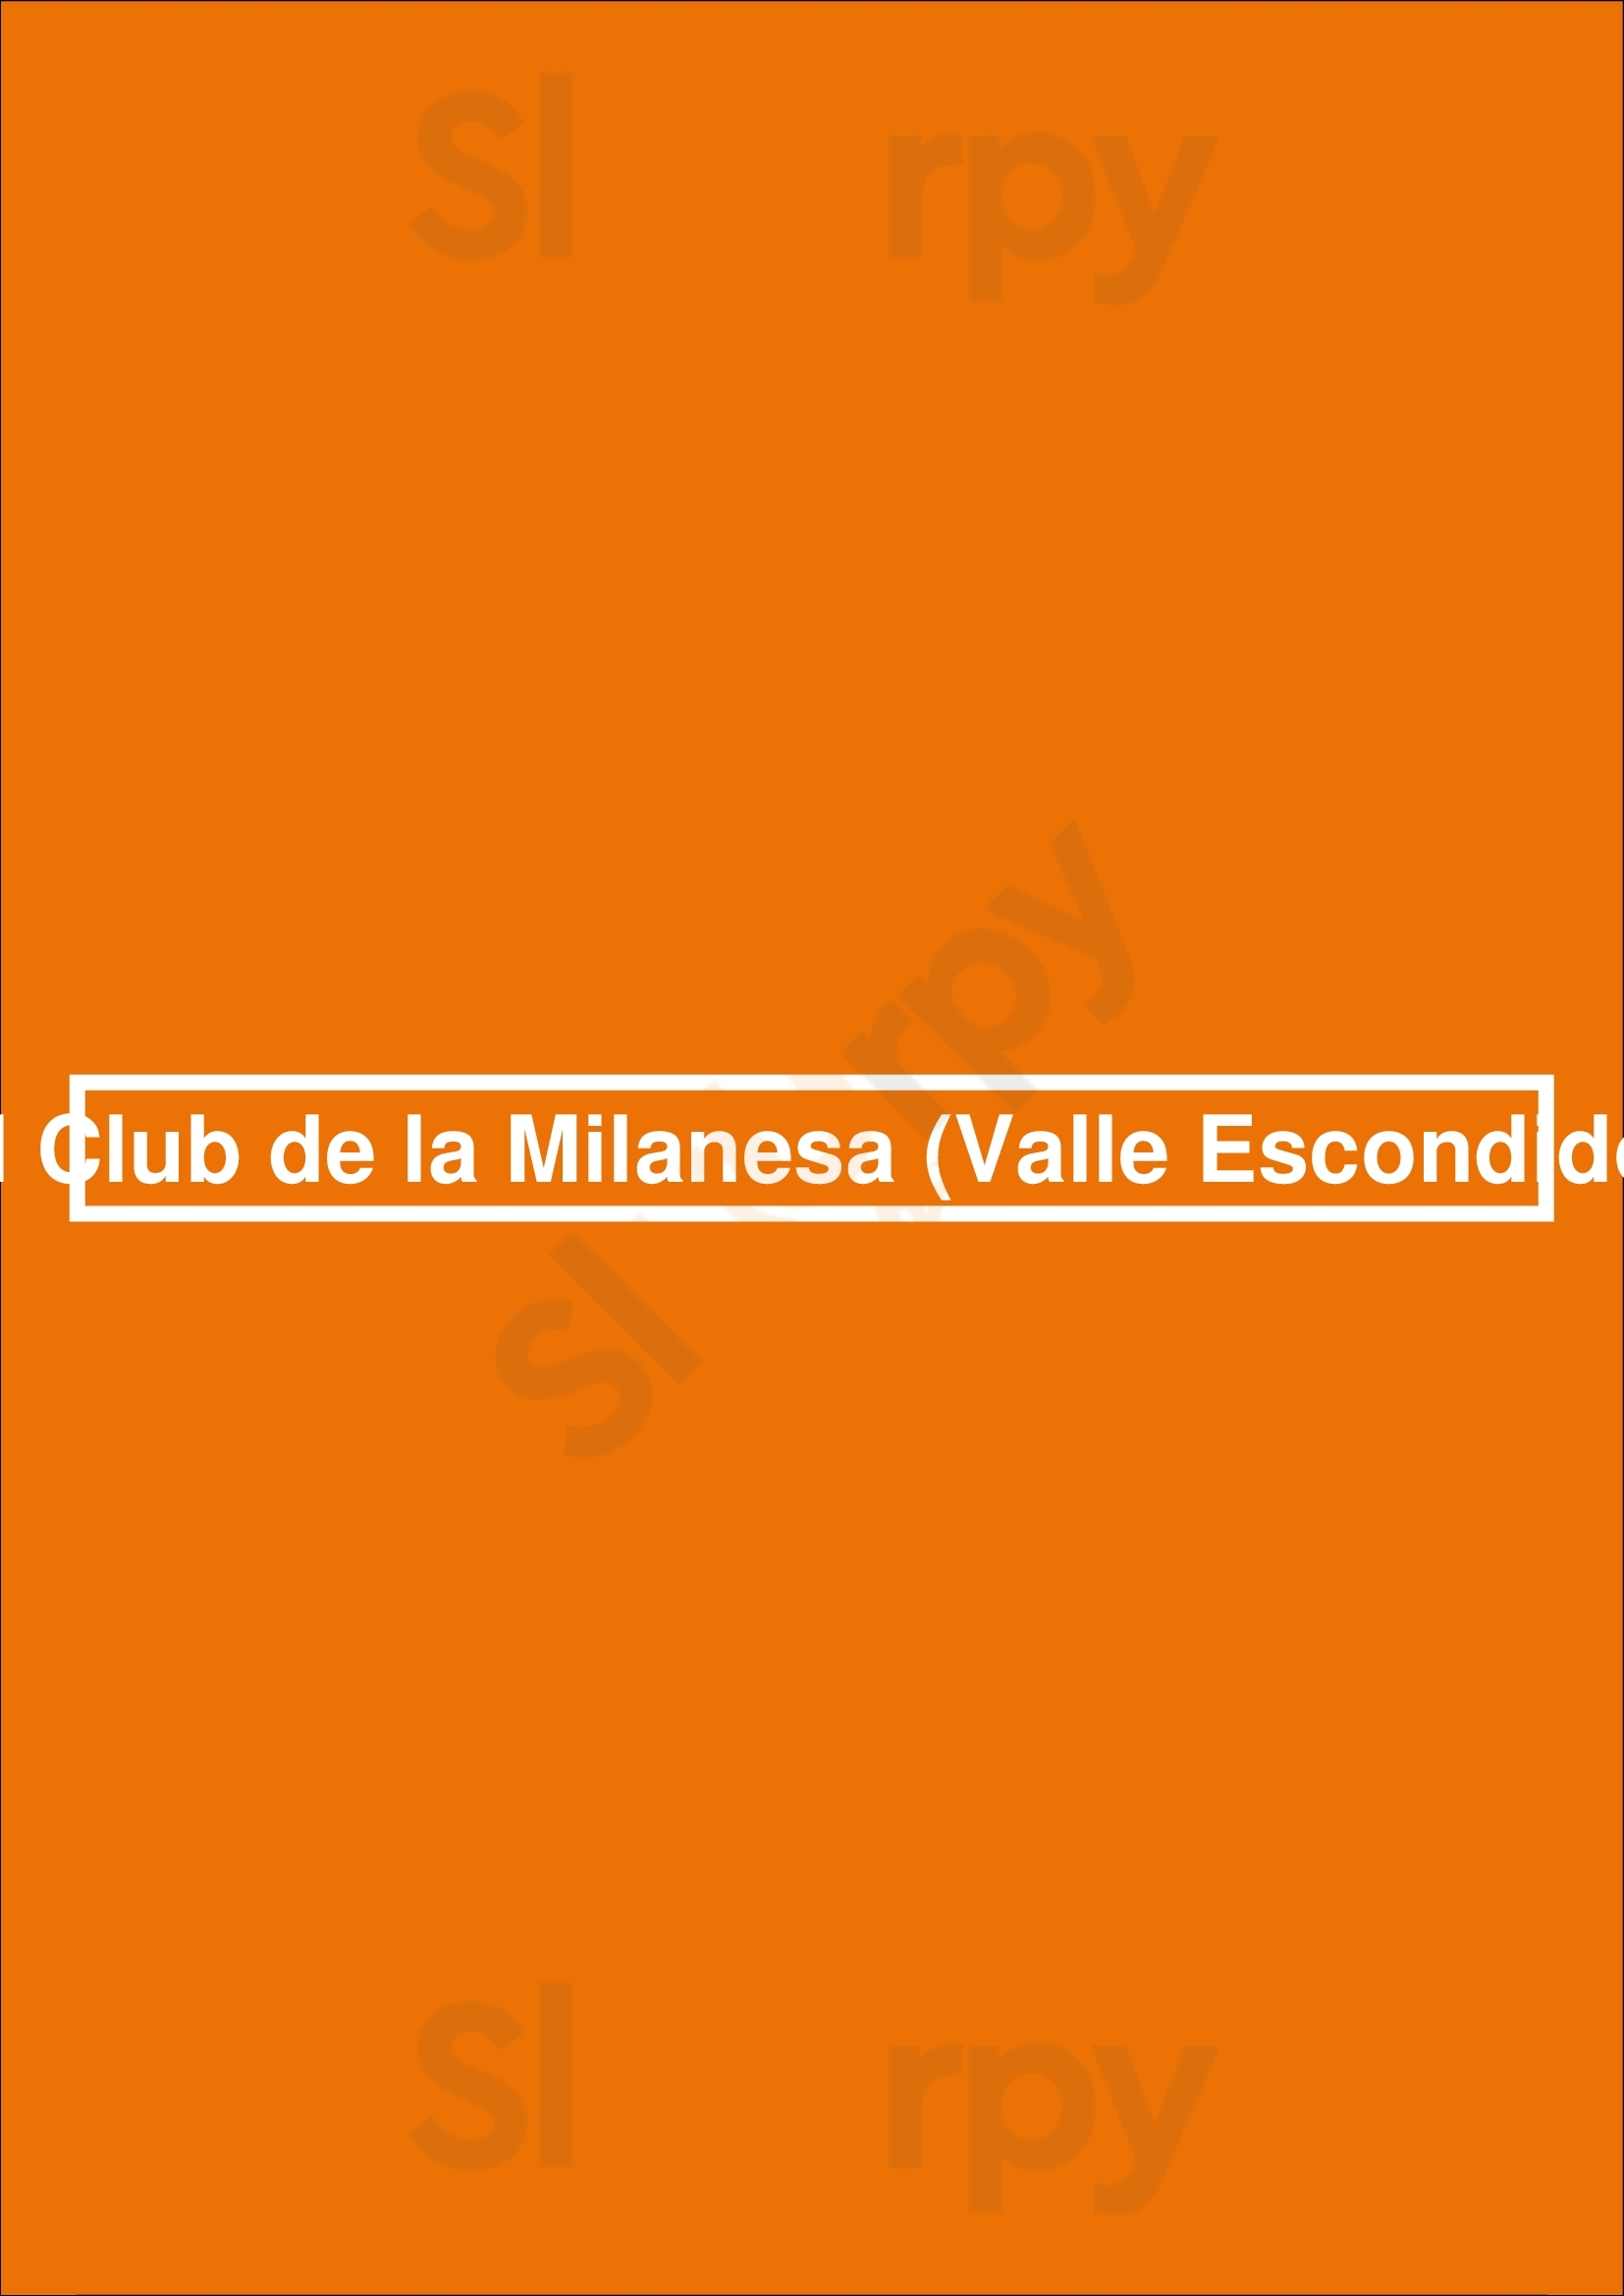 El Club De La Milanesa (valle Escondido) Córdoba Menu - 1